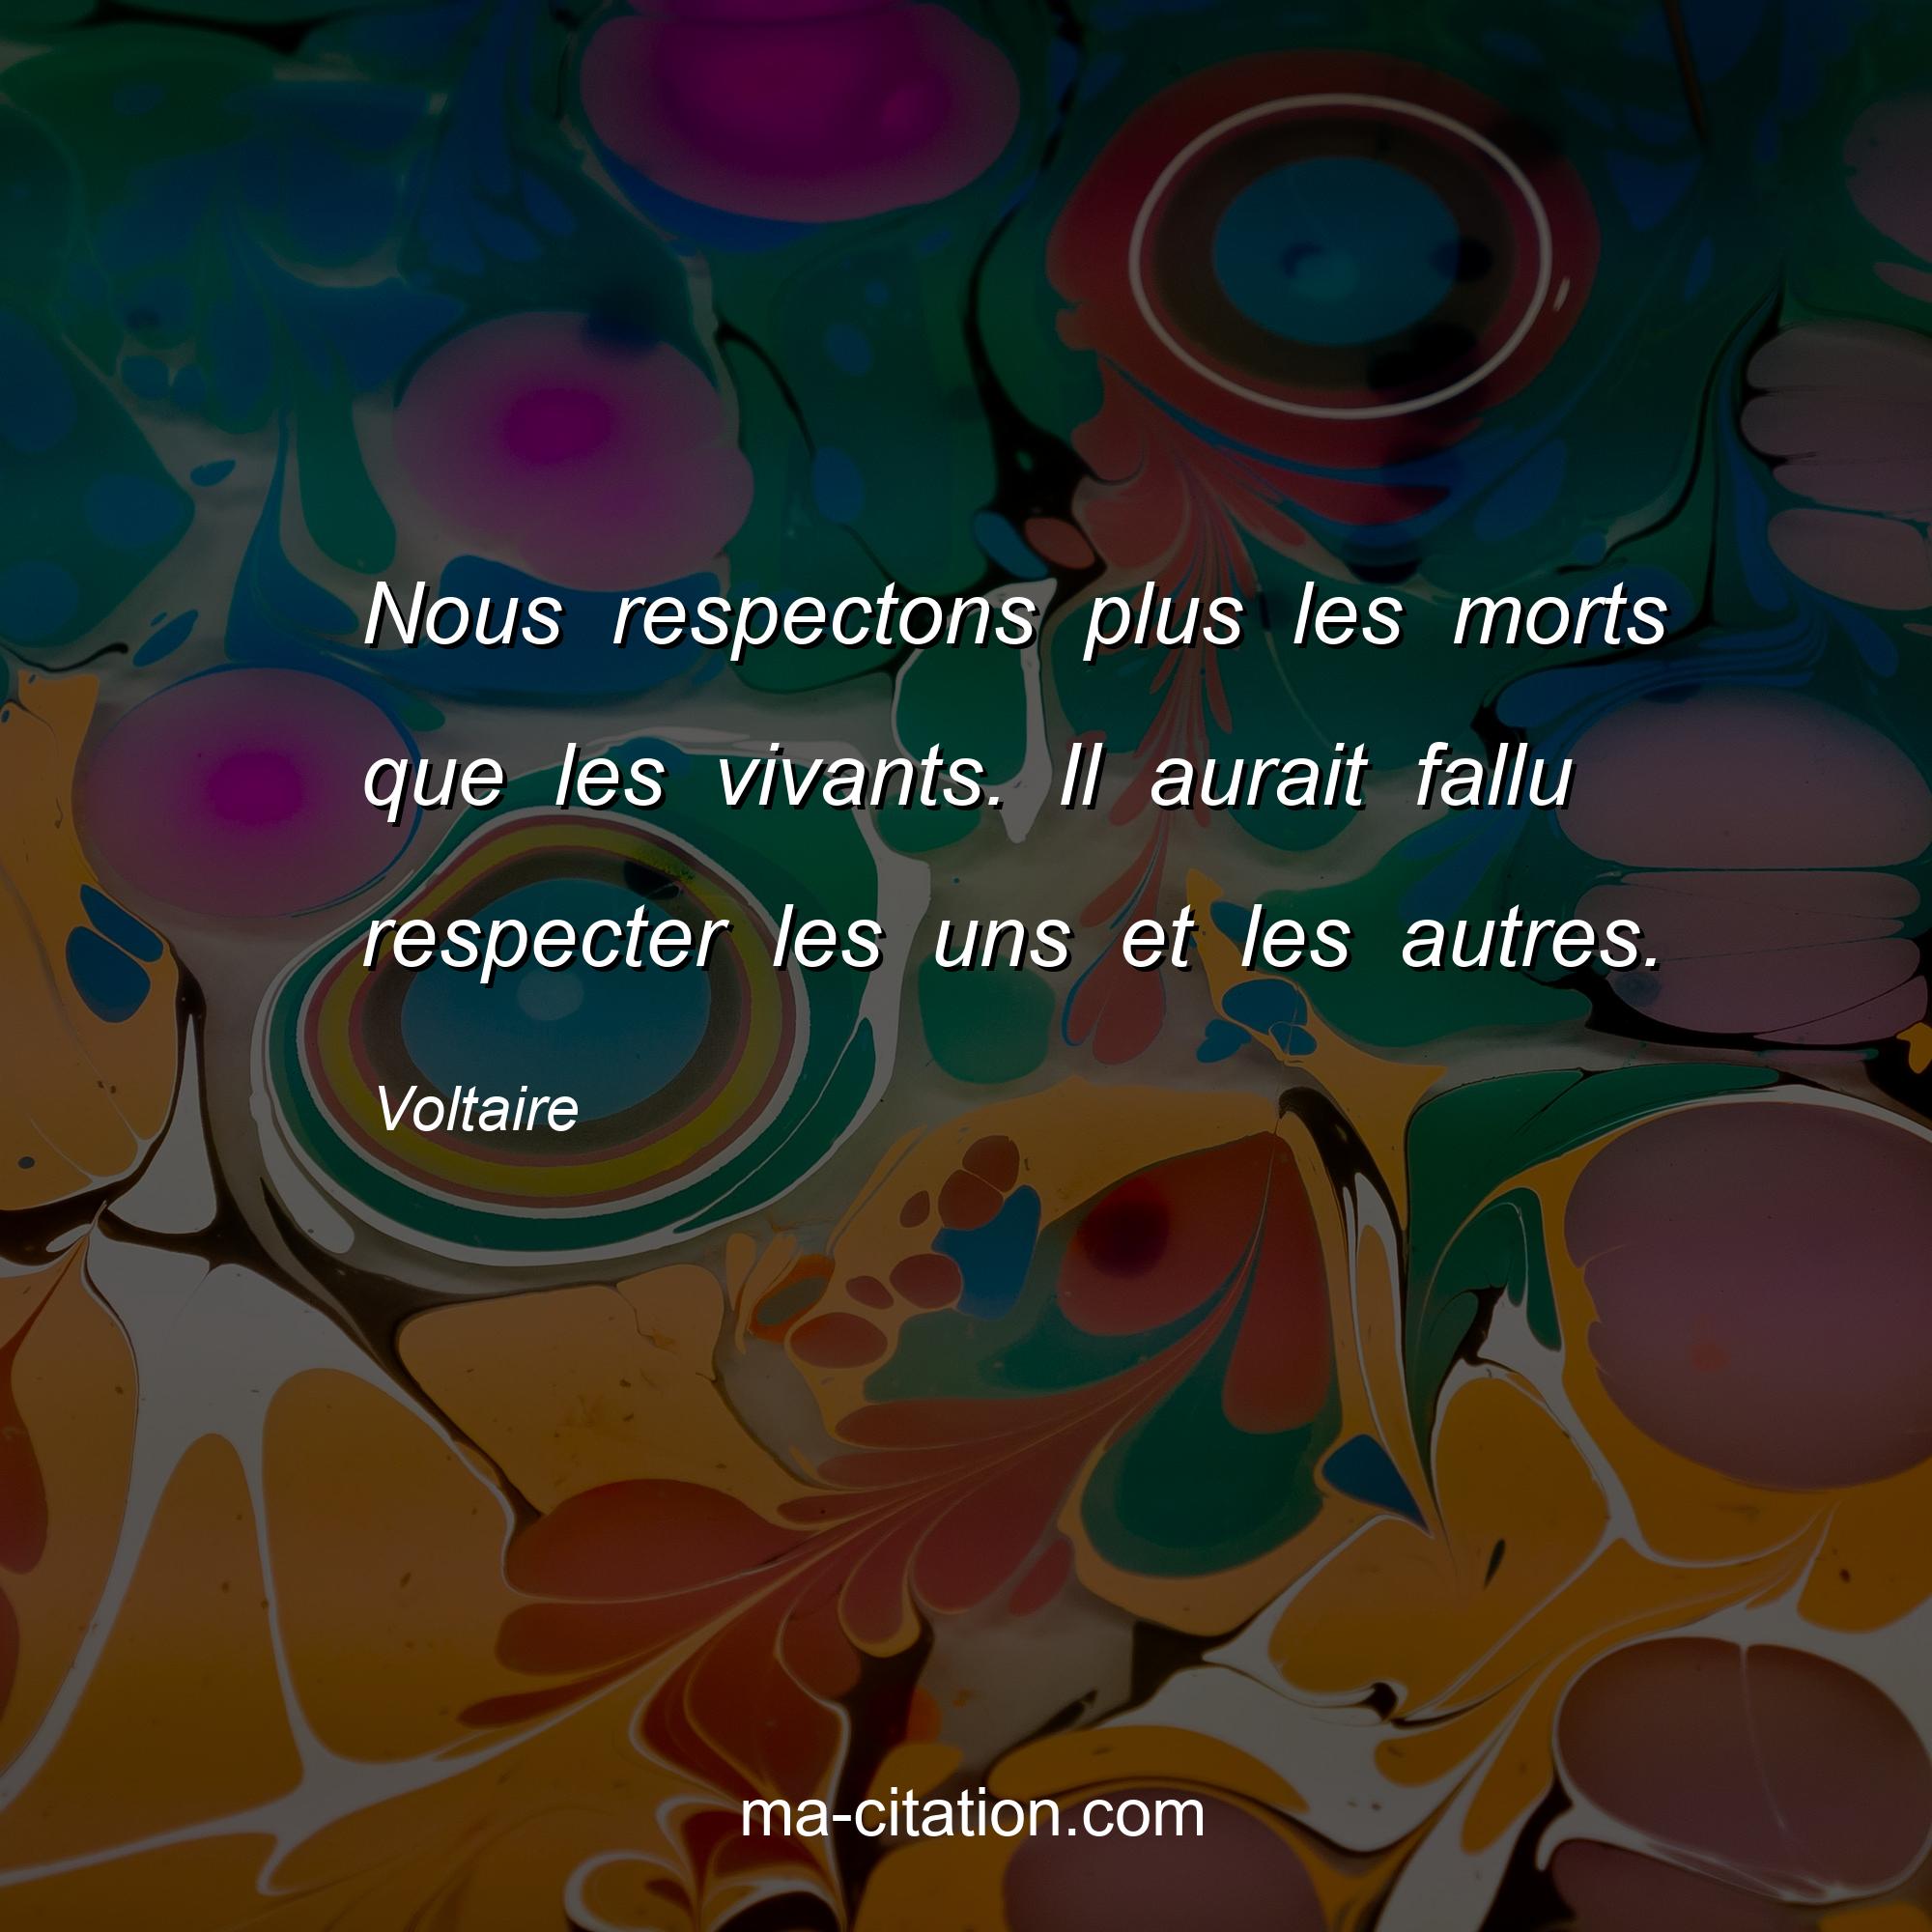 Voltaire : Nous respectons plus les morts que les vivants. Il aurait fallu respecter les uns et les autres.